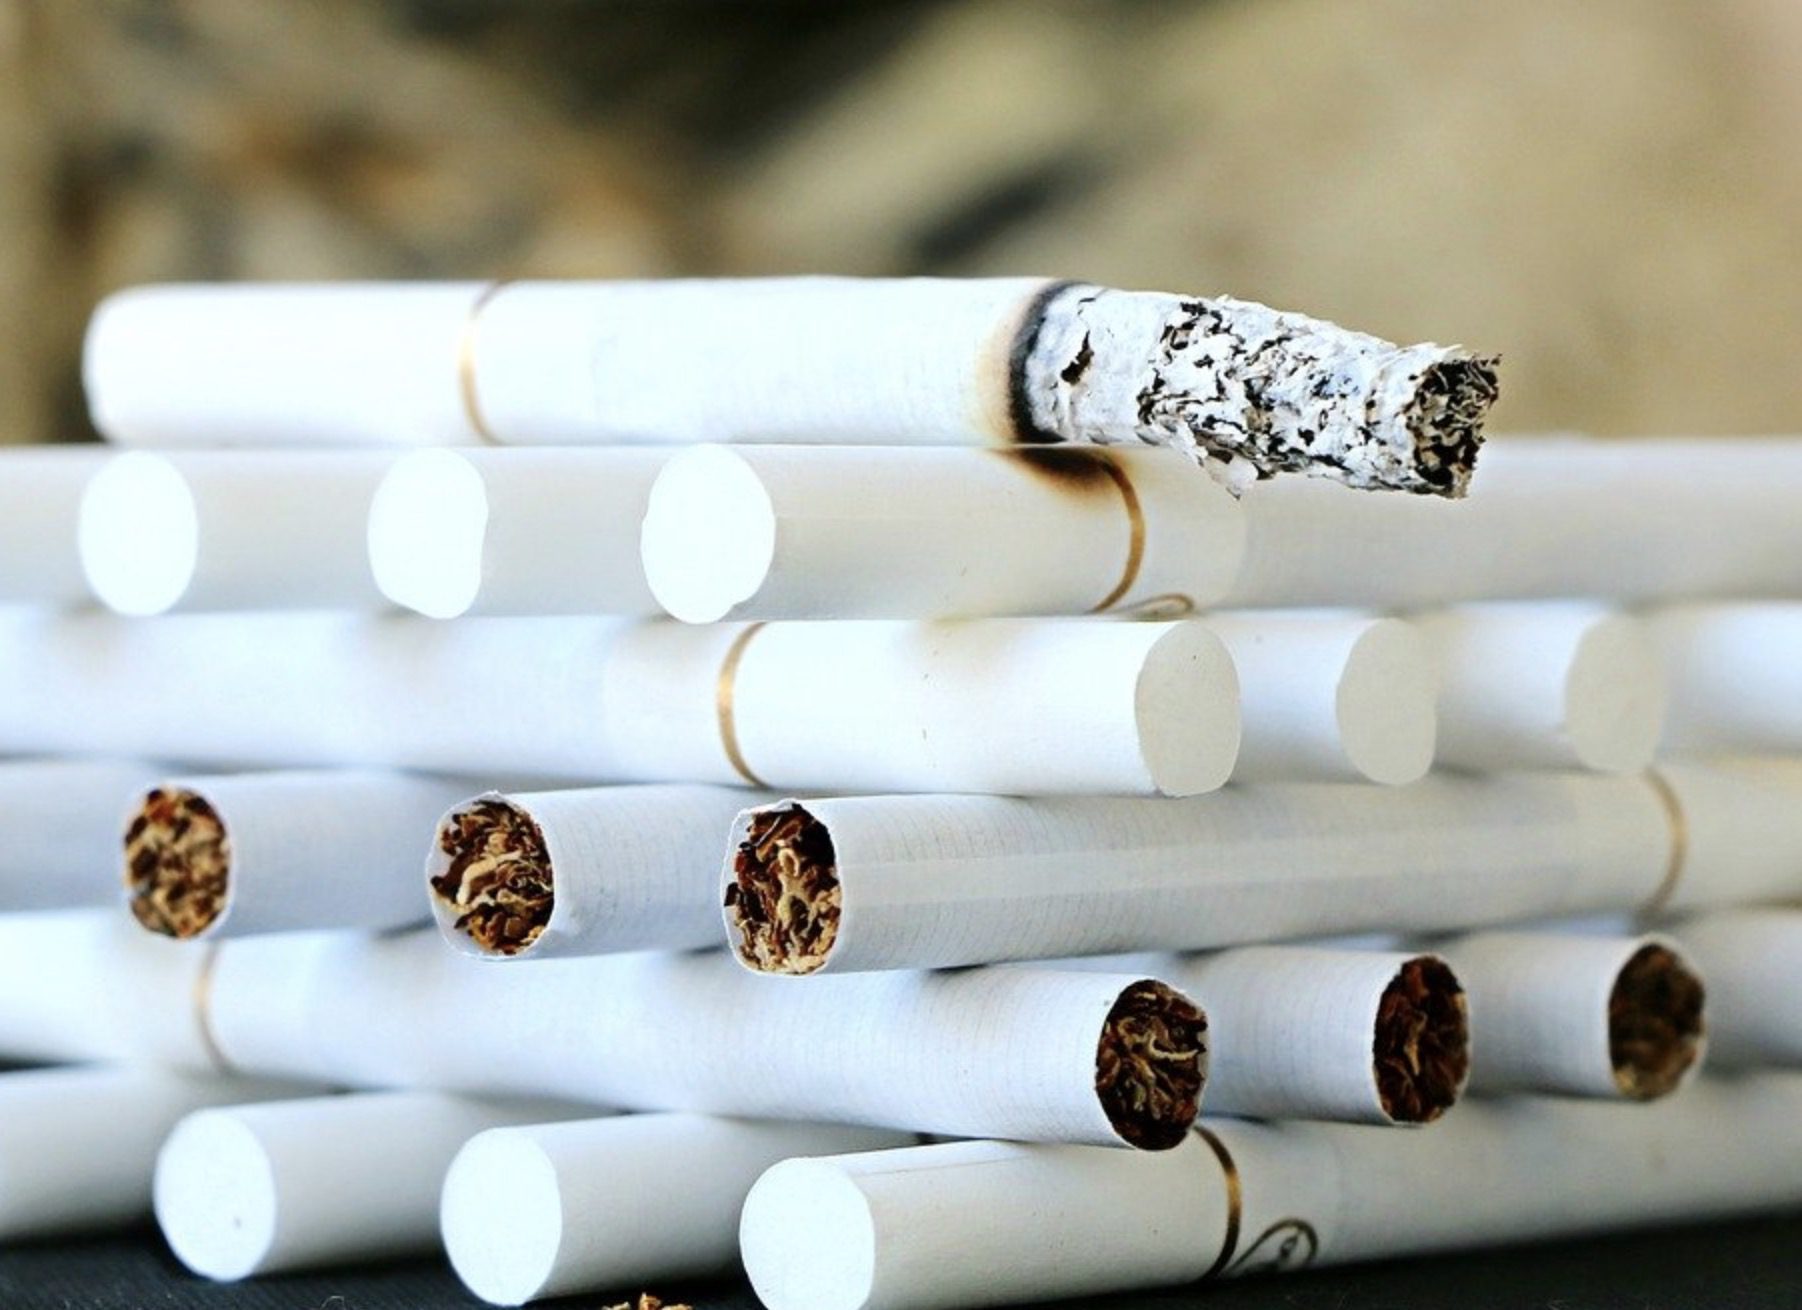 Achat de tabac en ligne : comment procéder ?